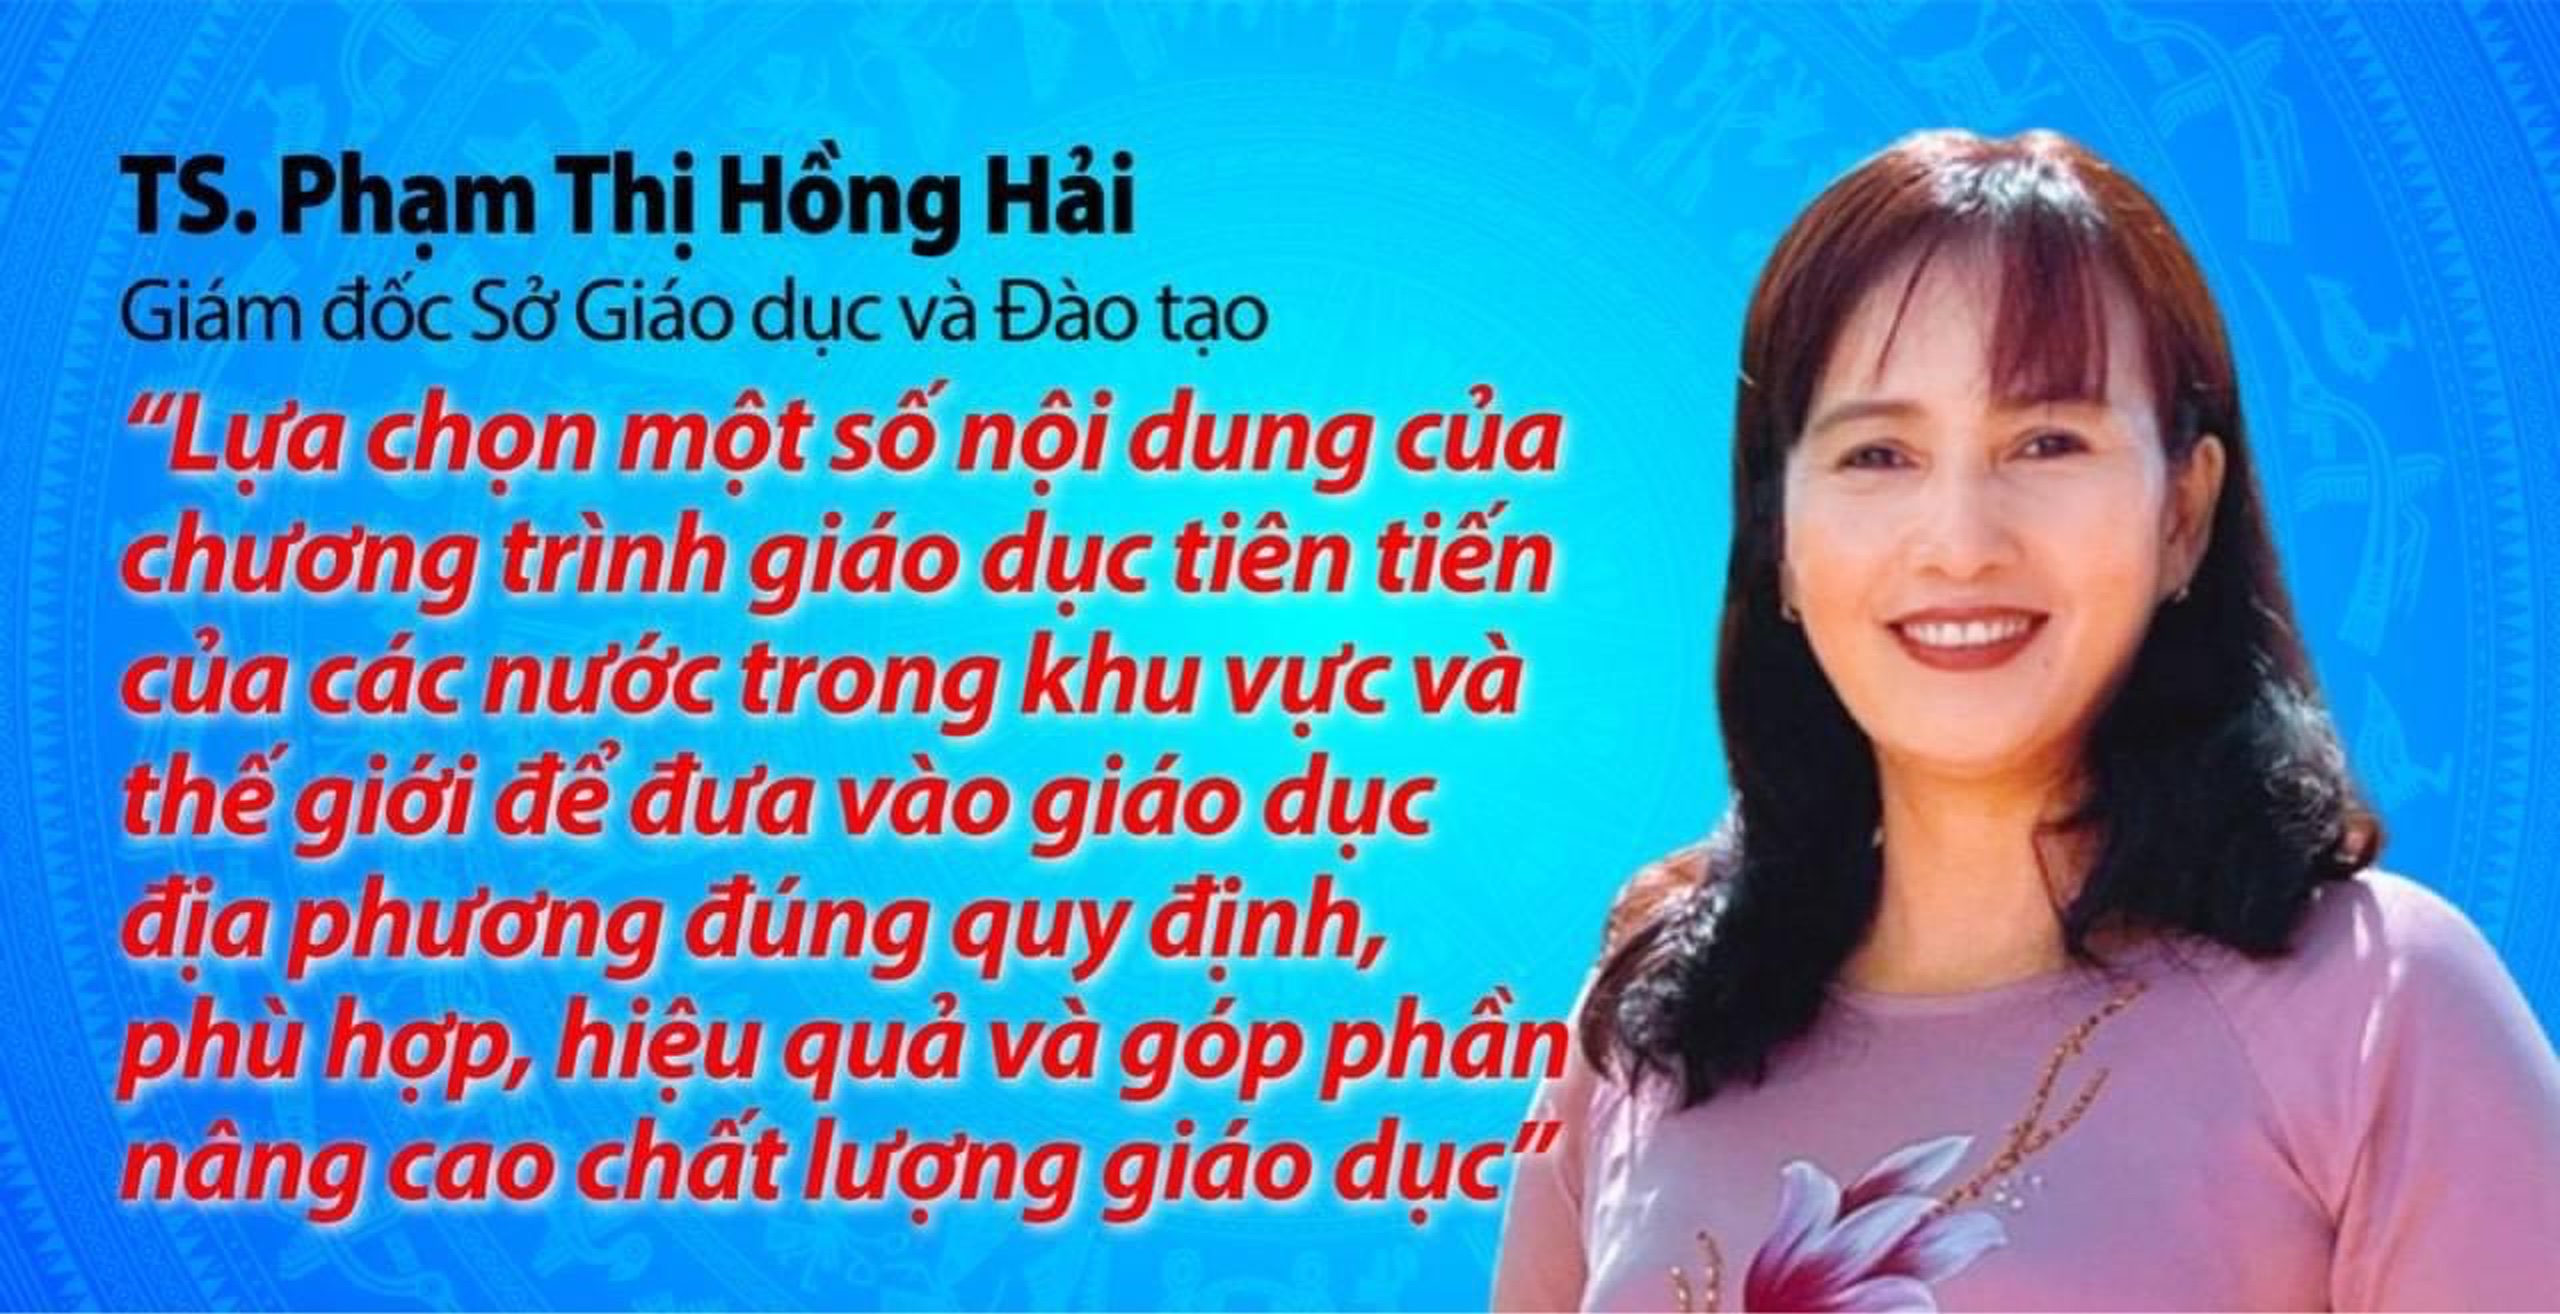 Tiến sĩ Phạm Thị Hồng Hải, Giám đốc Sở Giáo dục và Đào tạo -Ứng cử viên đại biểu Hội đồng nhân dân tỉnh Lâm Đồng khóa X, nhiệm kỳ 2021-2026